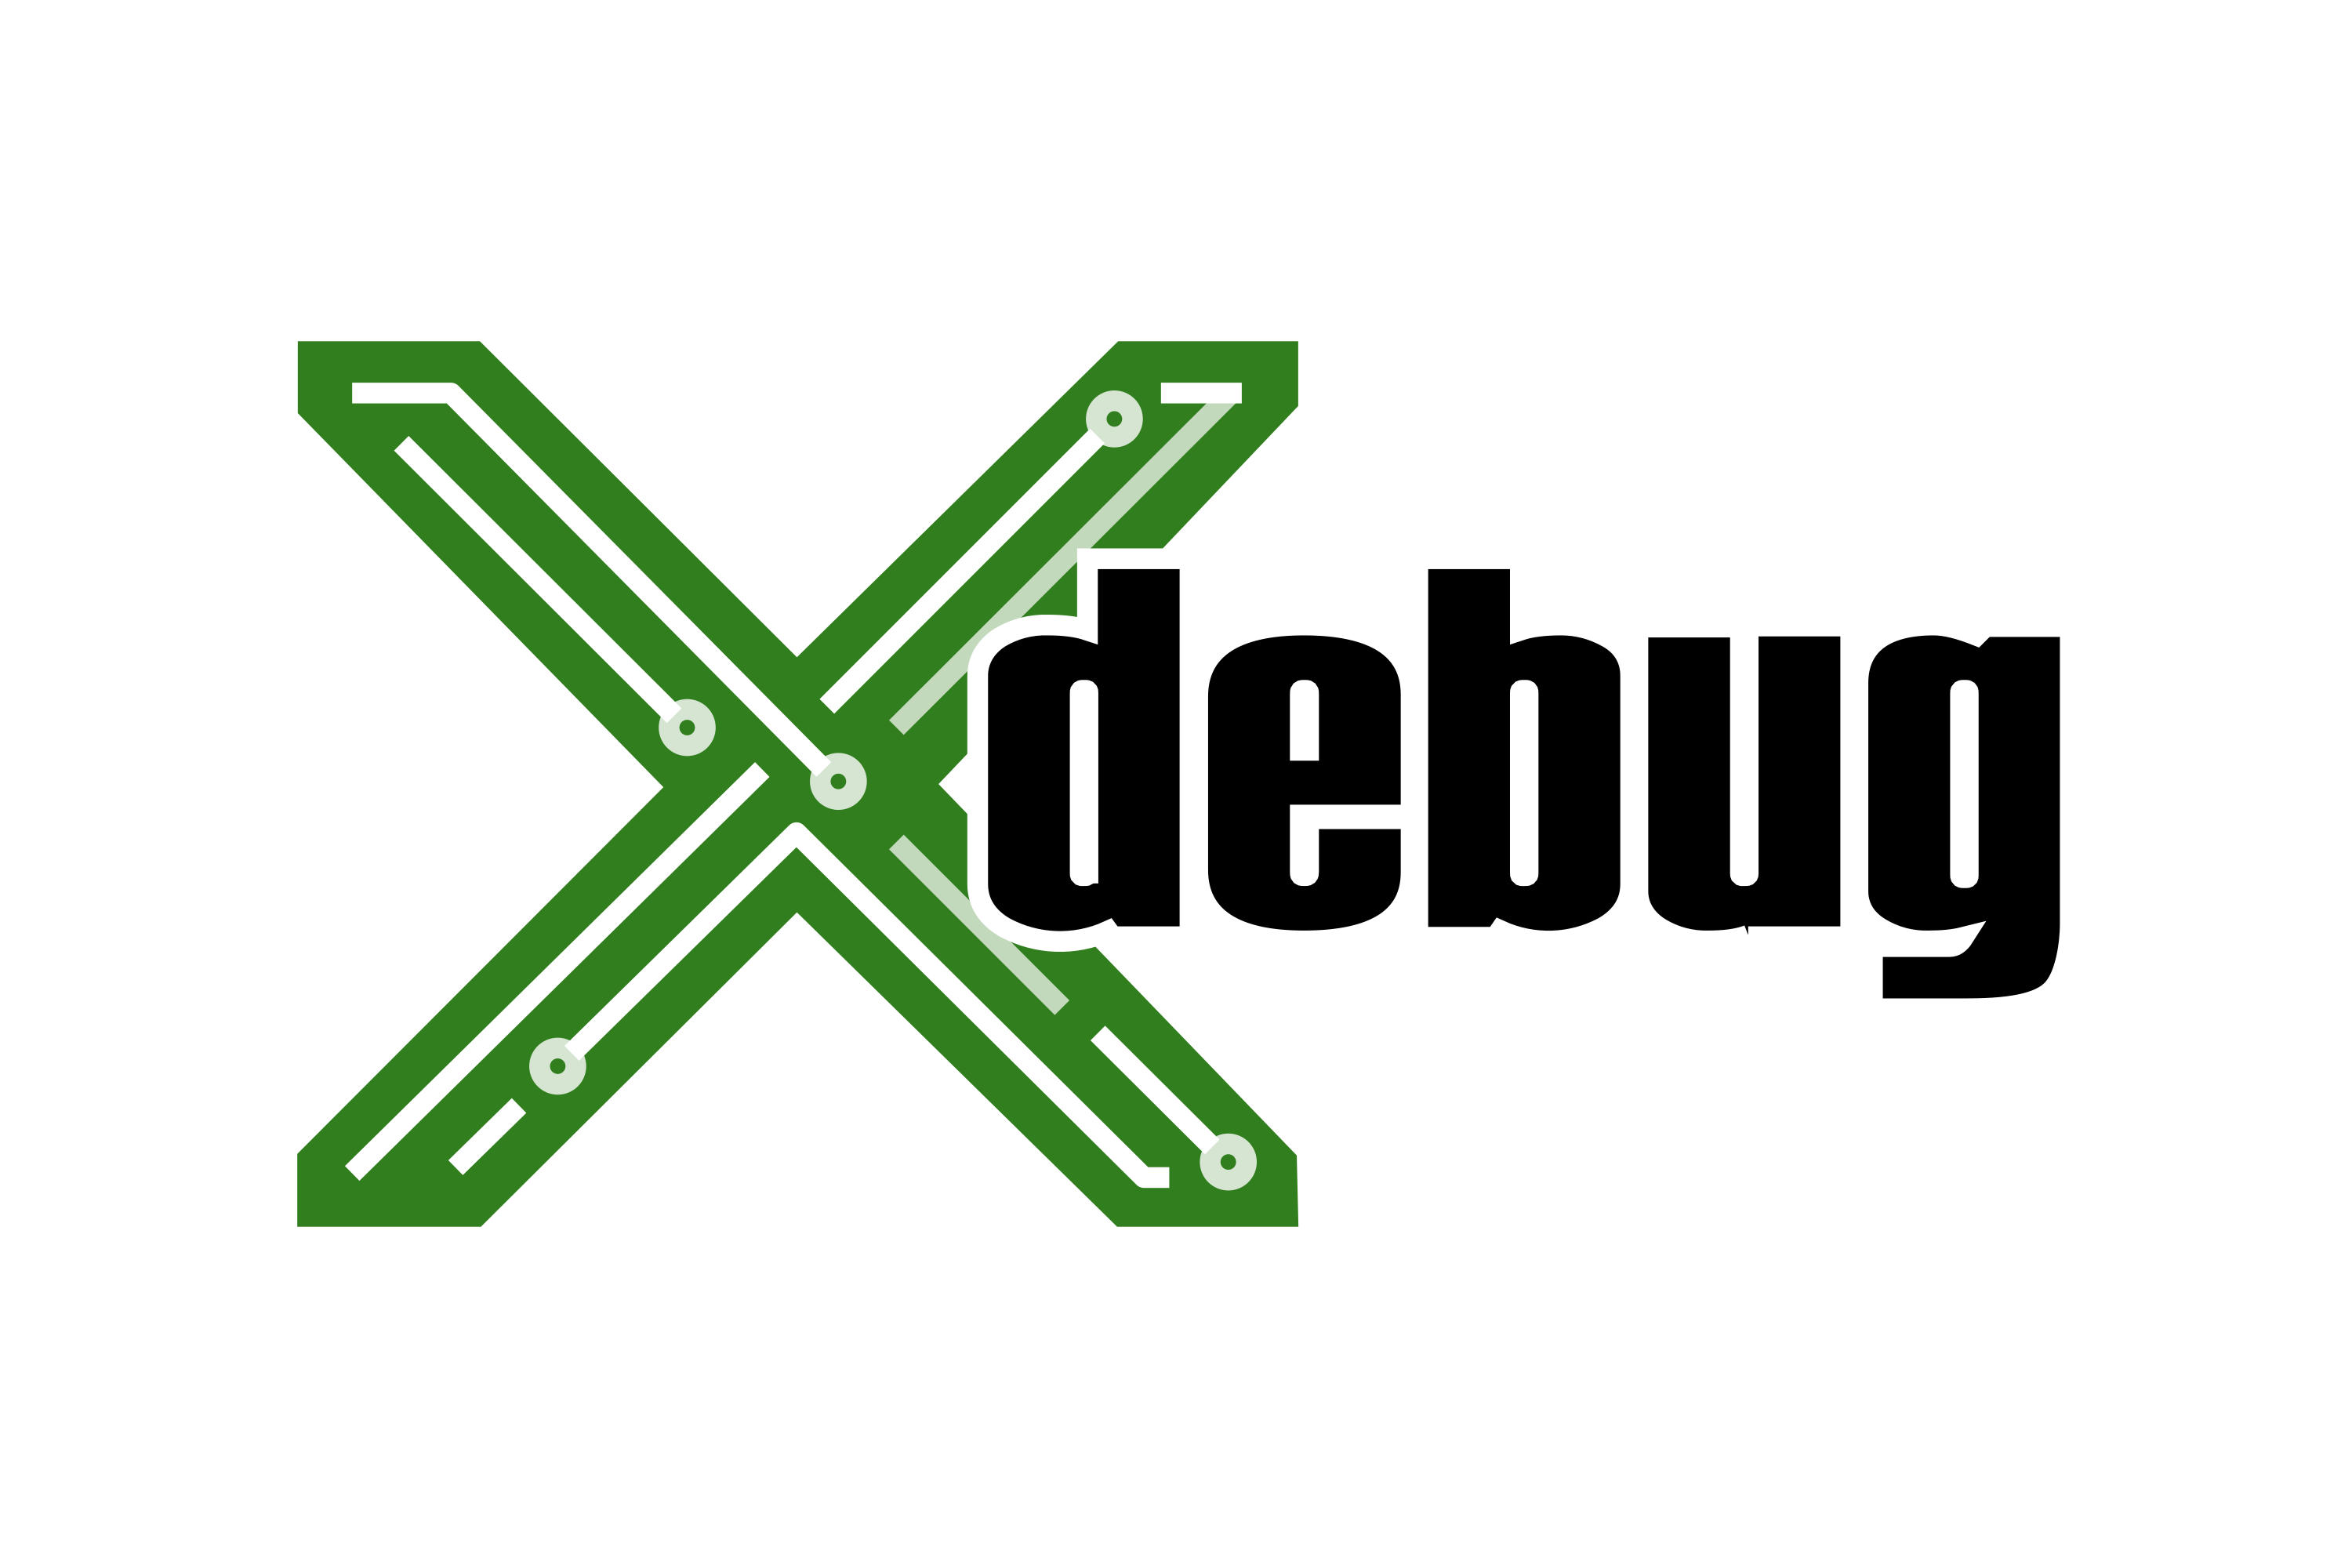 Xdebug Logo